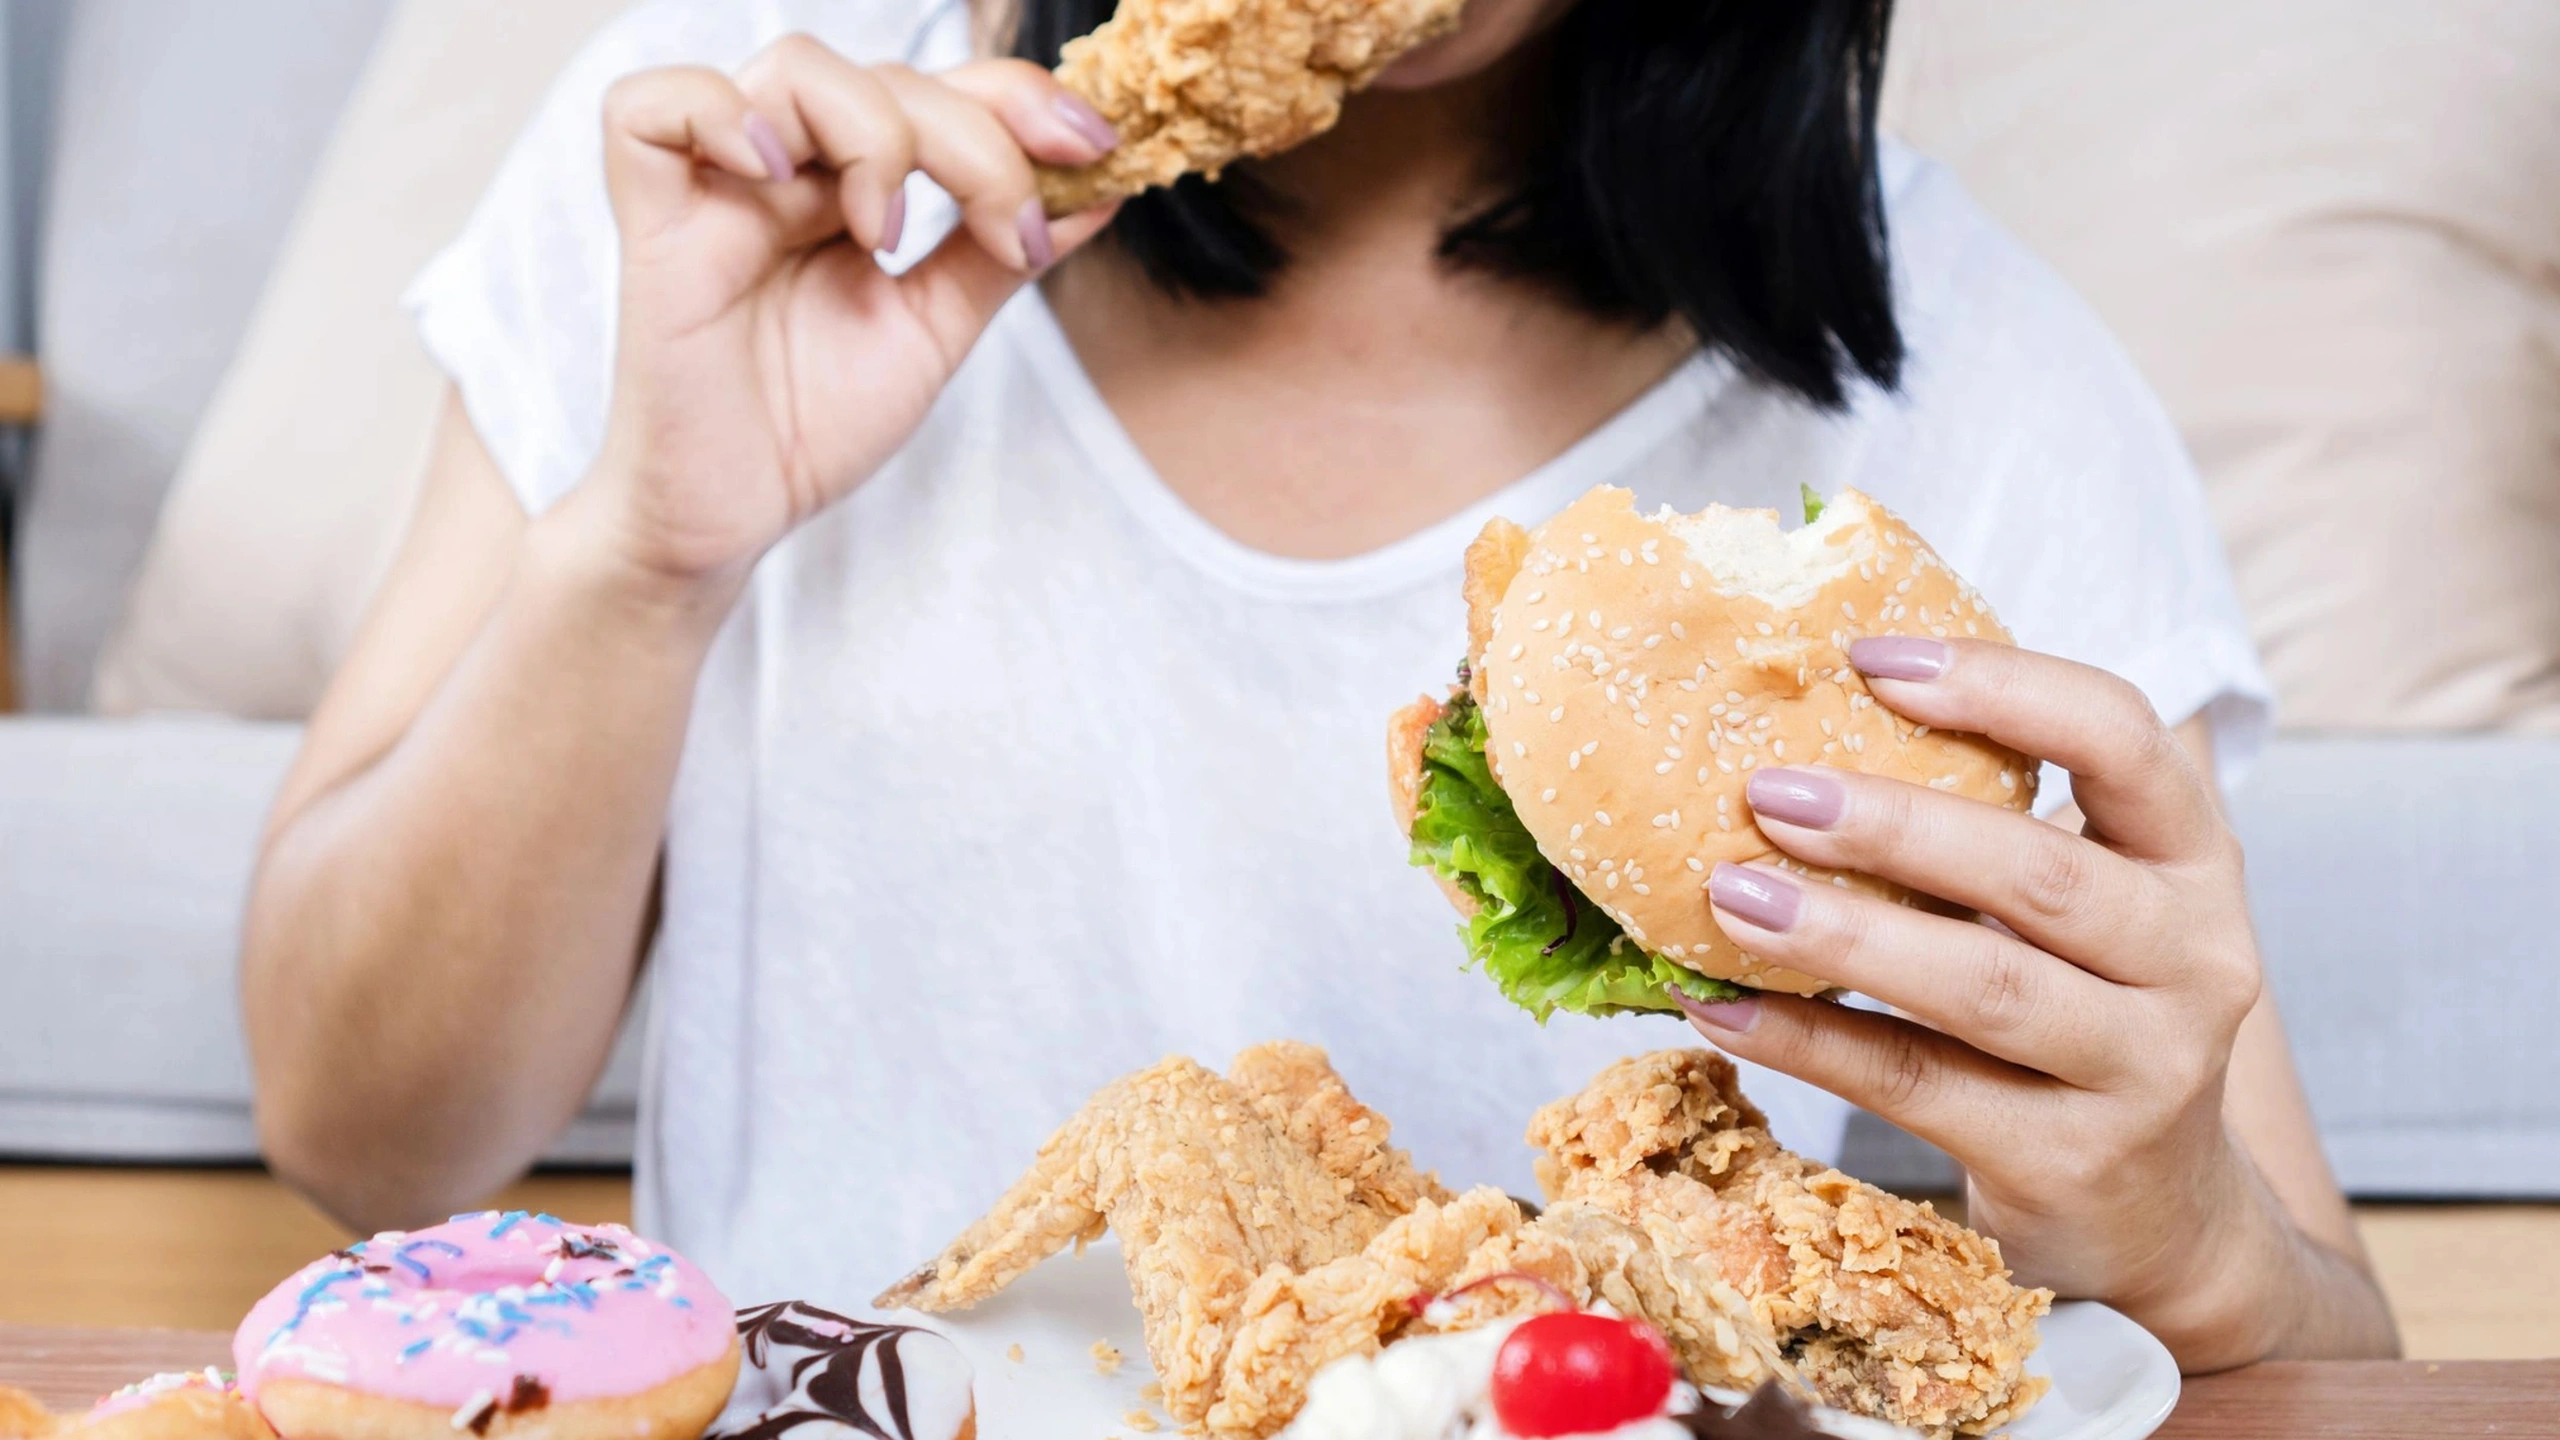 JAMA: мозг одиноких женщин интенсивнее реагирует на изображения вредной еды